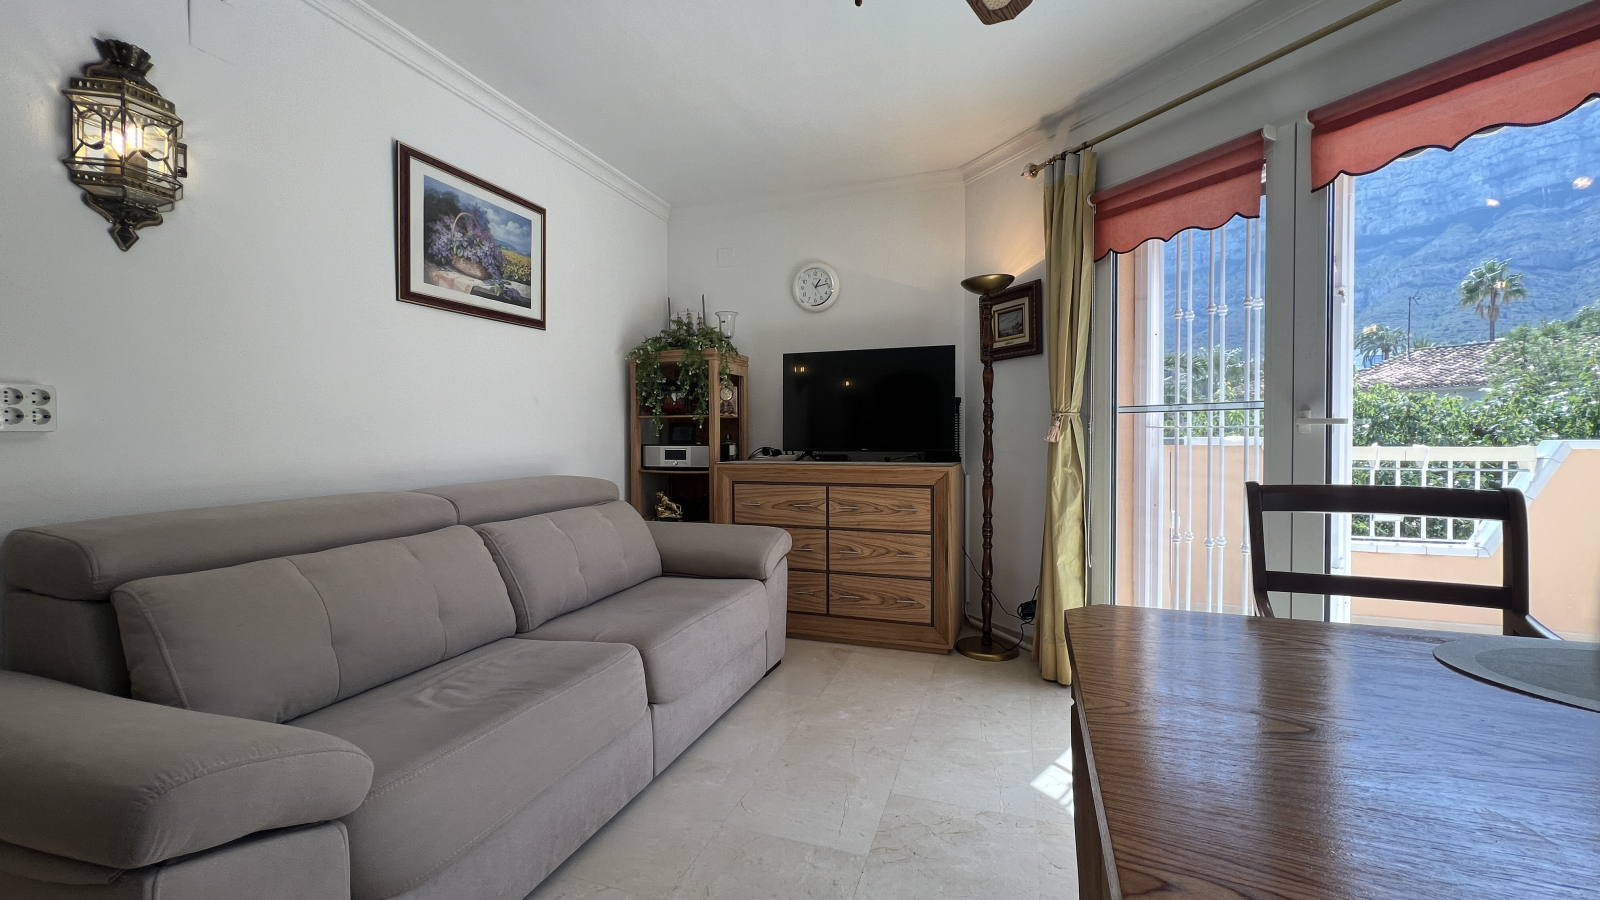 Bonito piso en un soleado complejo residencial cerca de la ciudad en la urbanización La Medina.